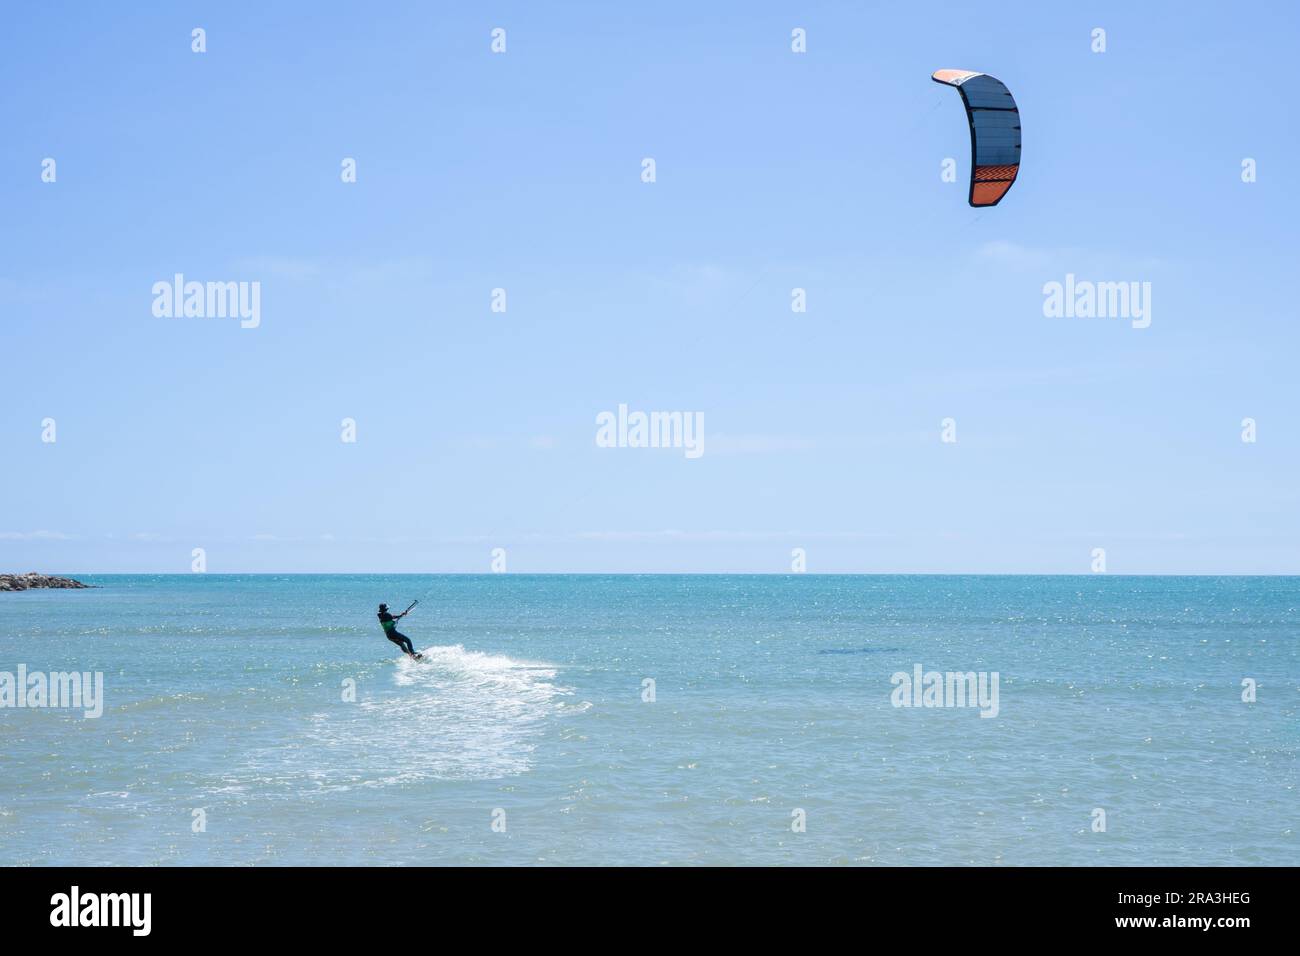 Vue arrière d'un kitesurfer à cheval sur son cerf-volant dans une mer calme. Sports nautiques Banque D'Images